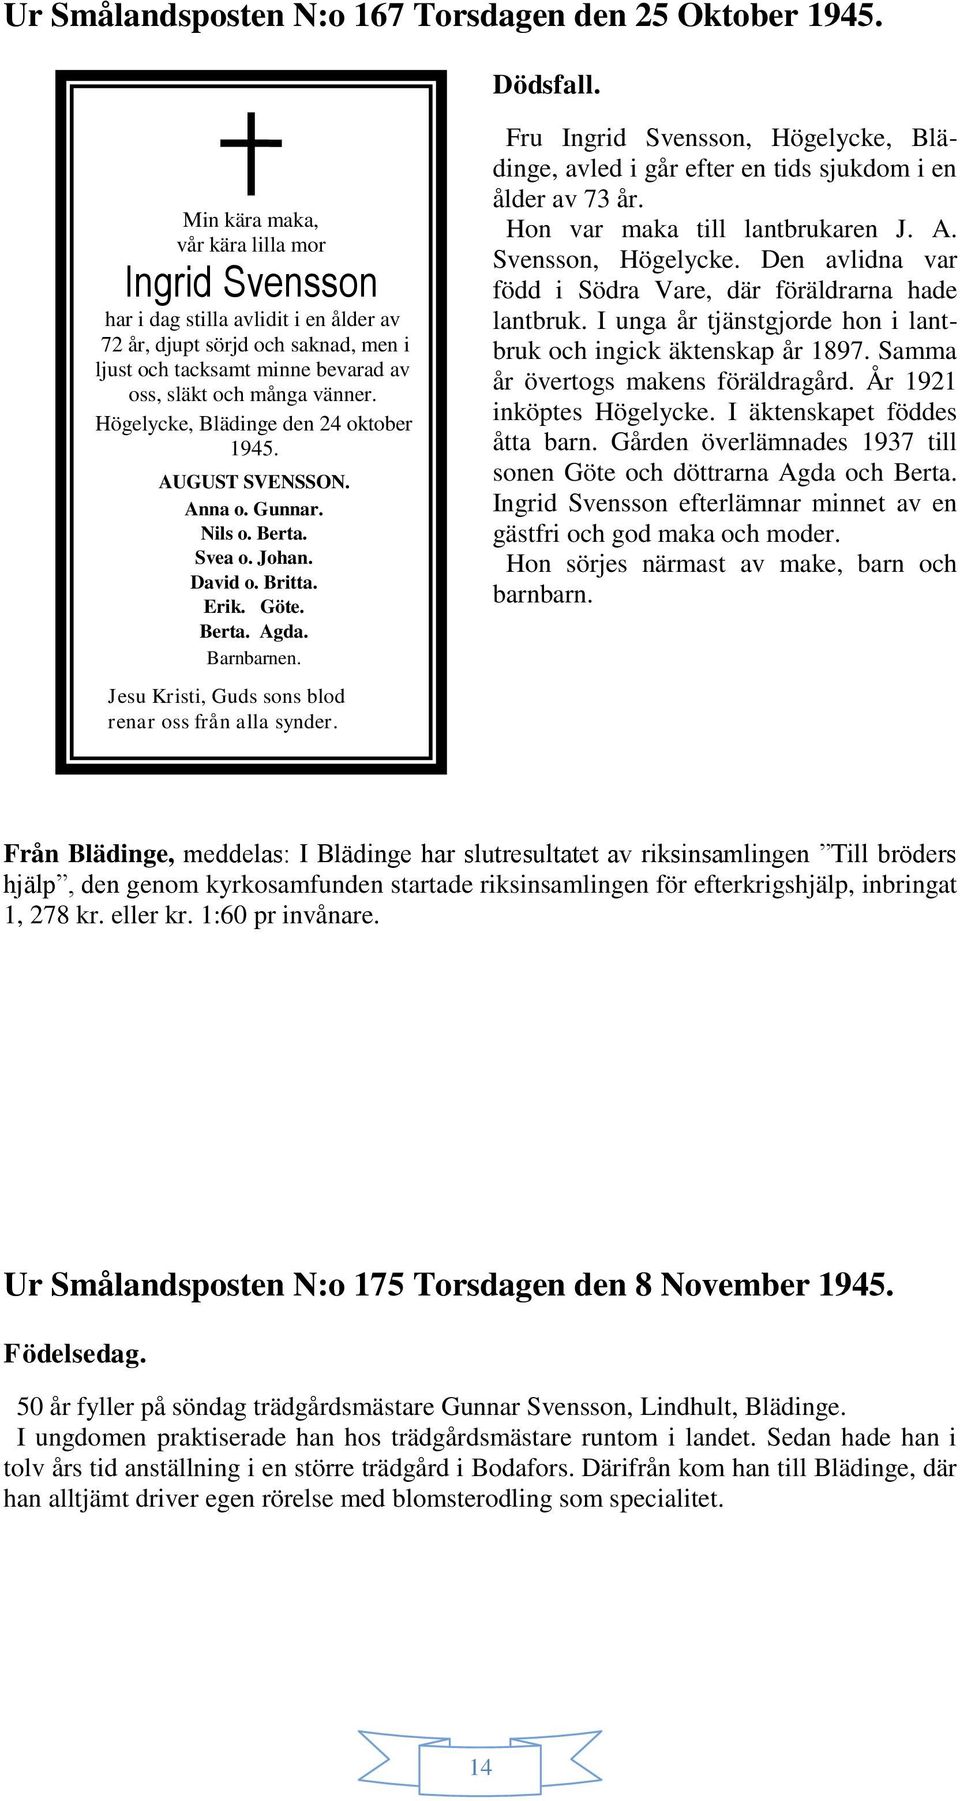 Högelycke, Blädinge den 24 oktober 1945. AUGUST SVENSSON. Anna o. Gunnar. Nils o. Berta. Svea o. Johan. David o. Britta. Erik. Göte. Berta. Agda. Barnbarnen.